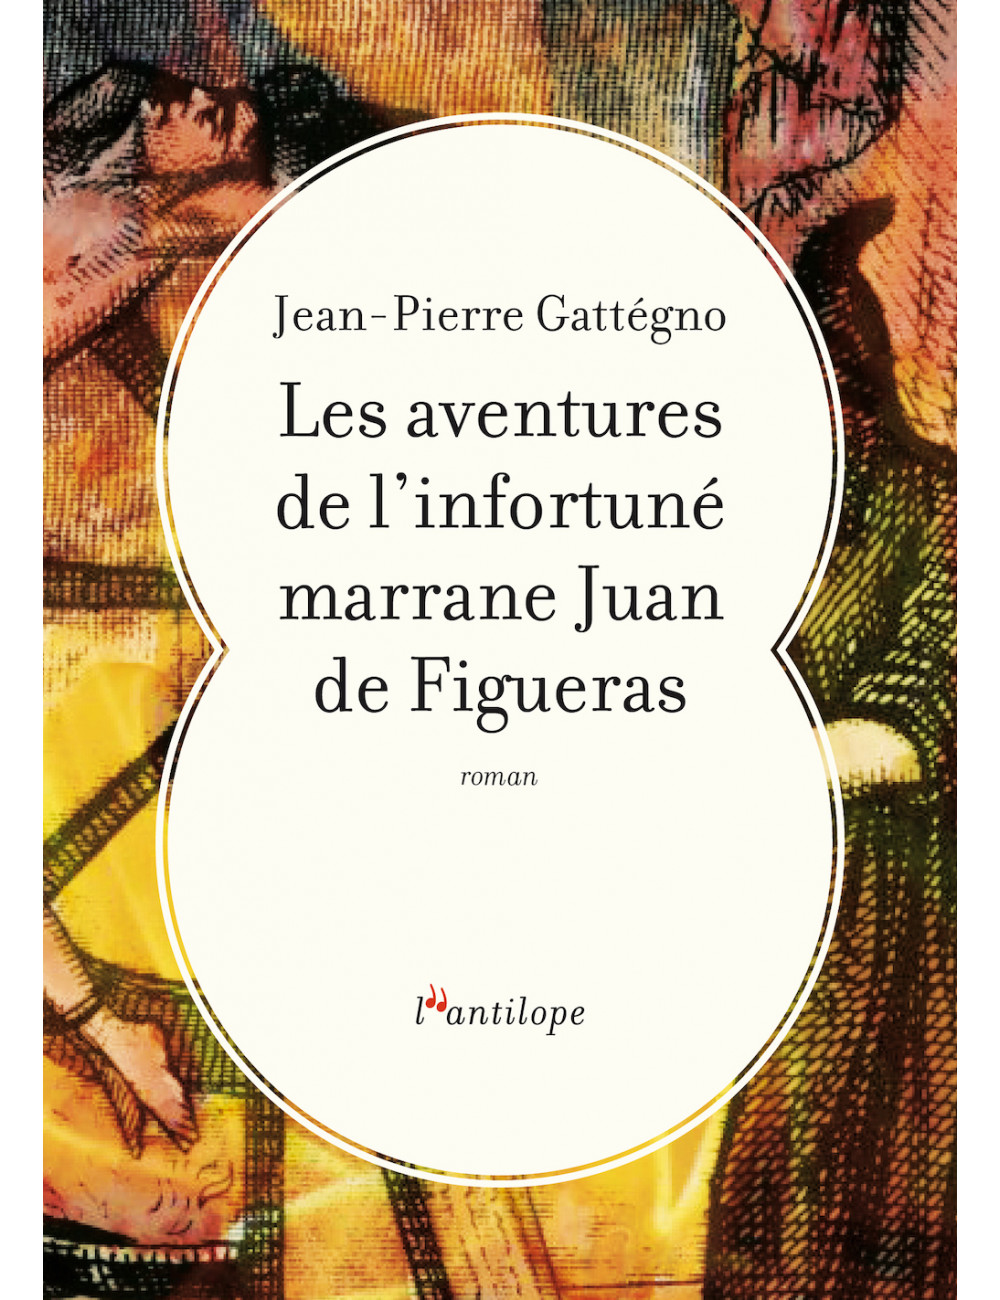 le livre Les aventures de l’infortuné marrane Juan de Figueras Éditions de l’Antilope Jean-Pierre Gattégno